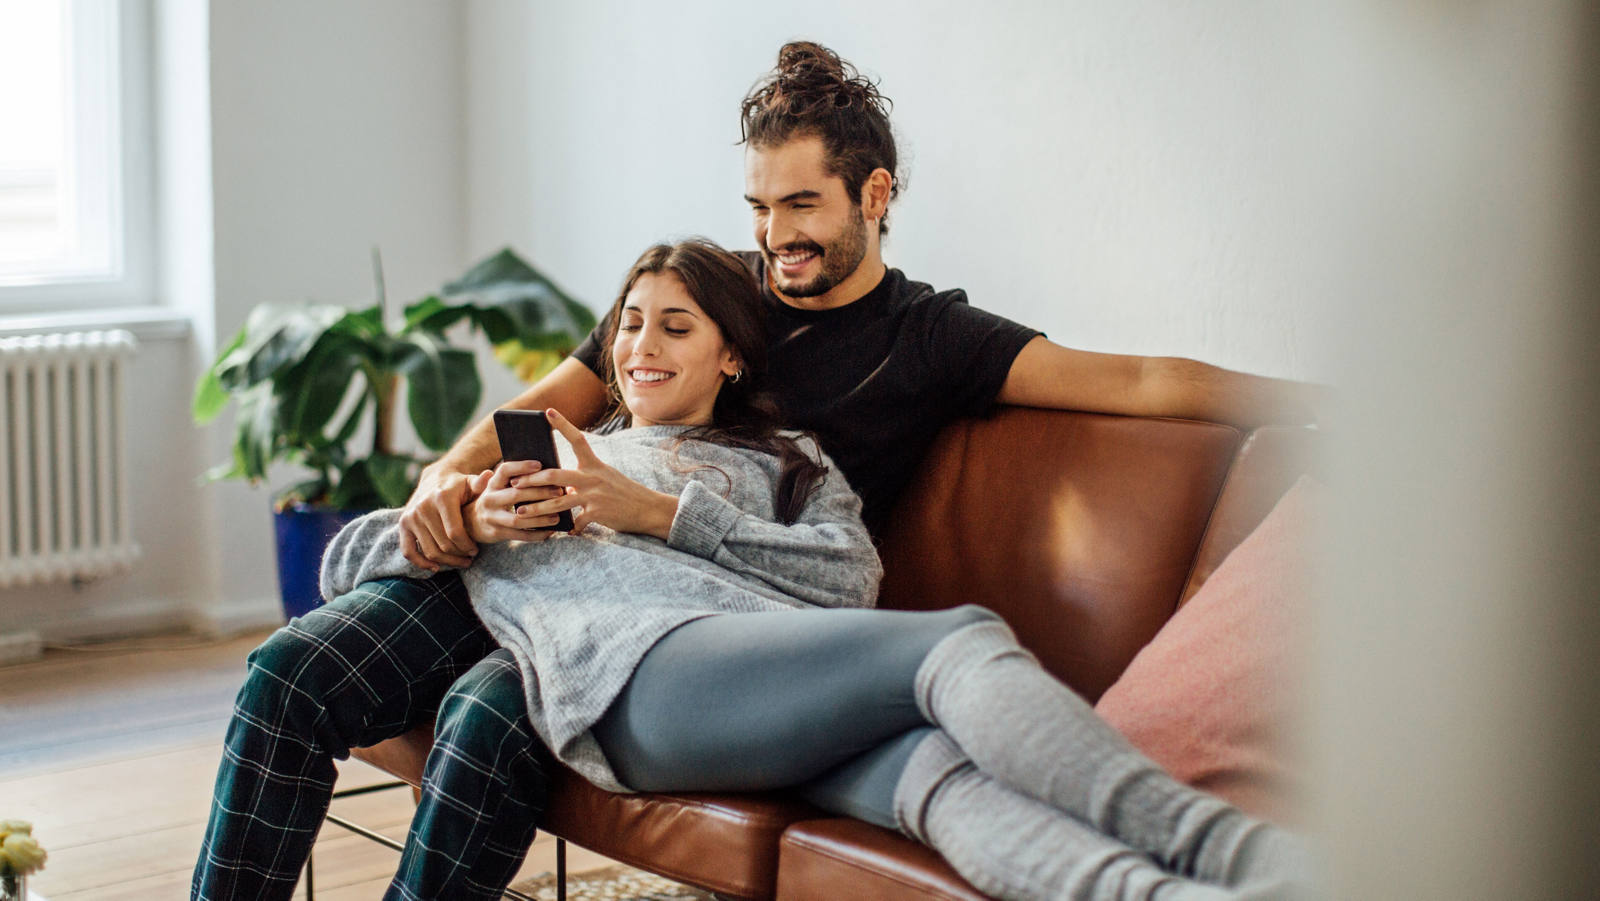 Un jeune couple est assis sur le canapé et regarde heureux dans son smartphone.